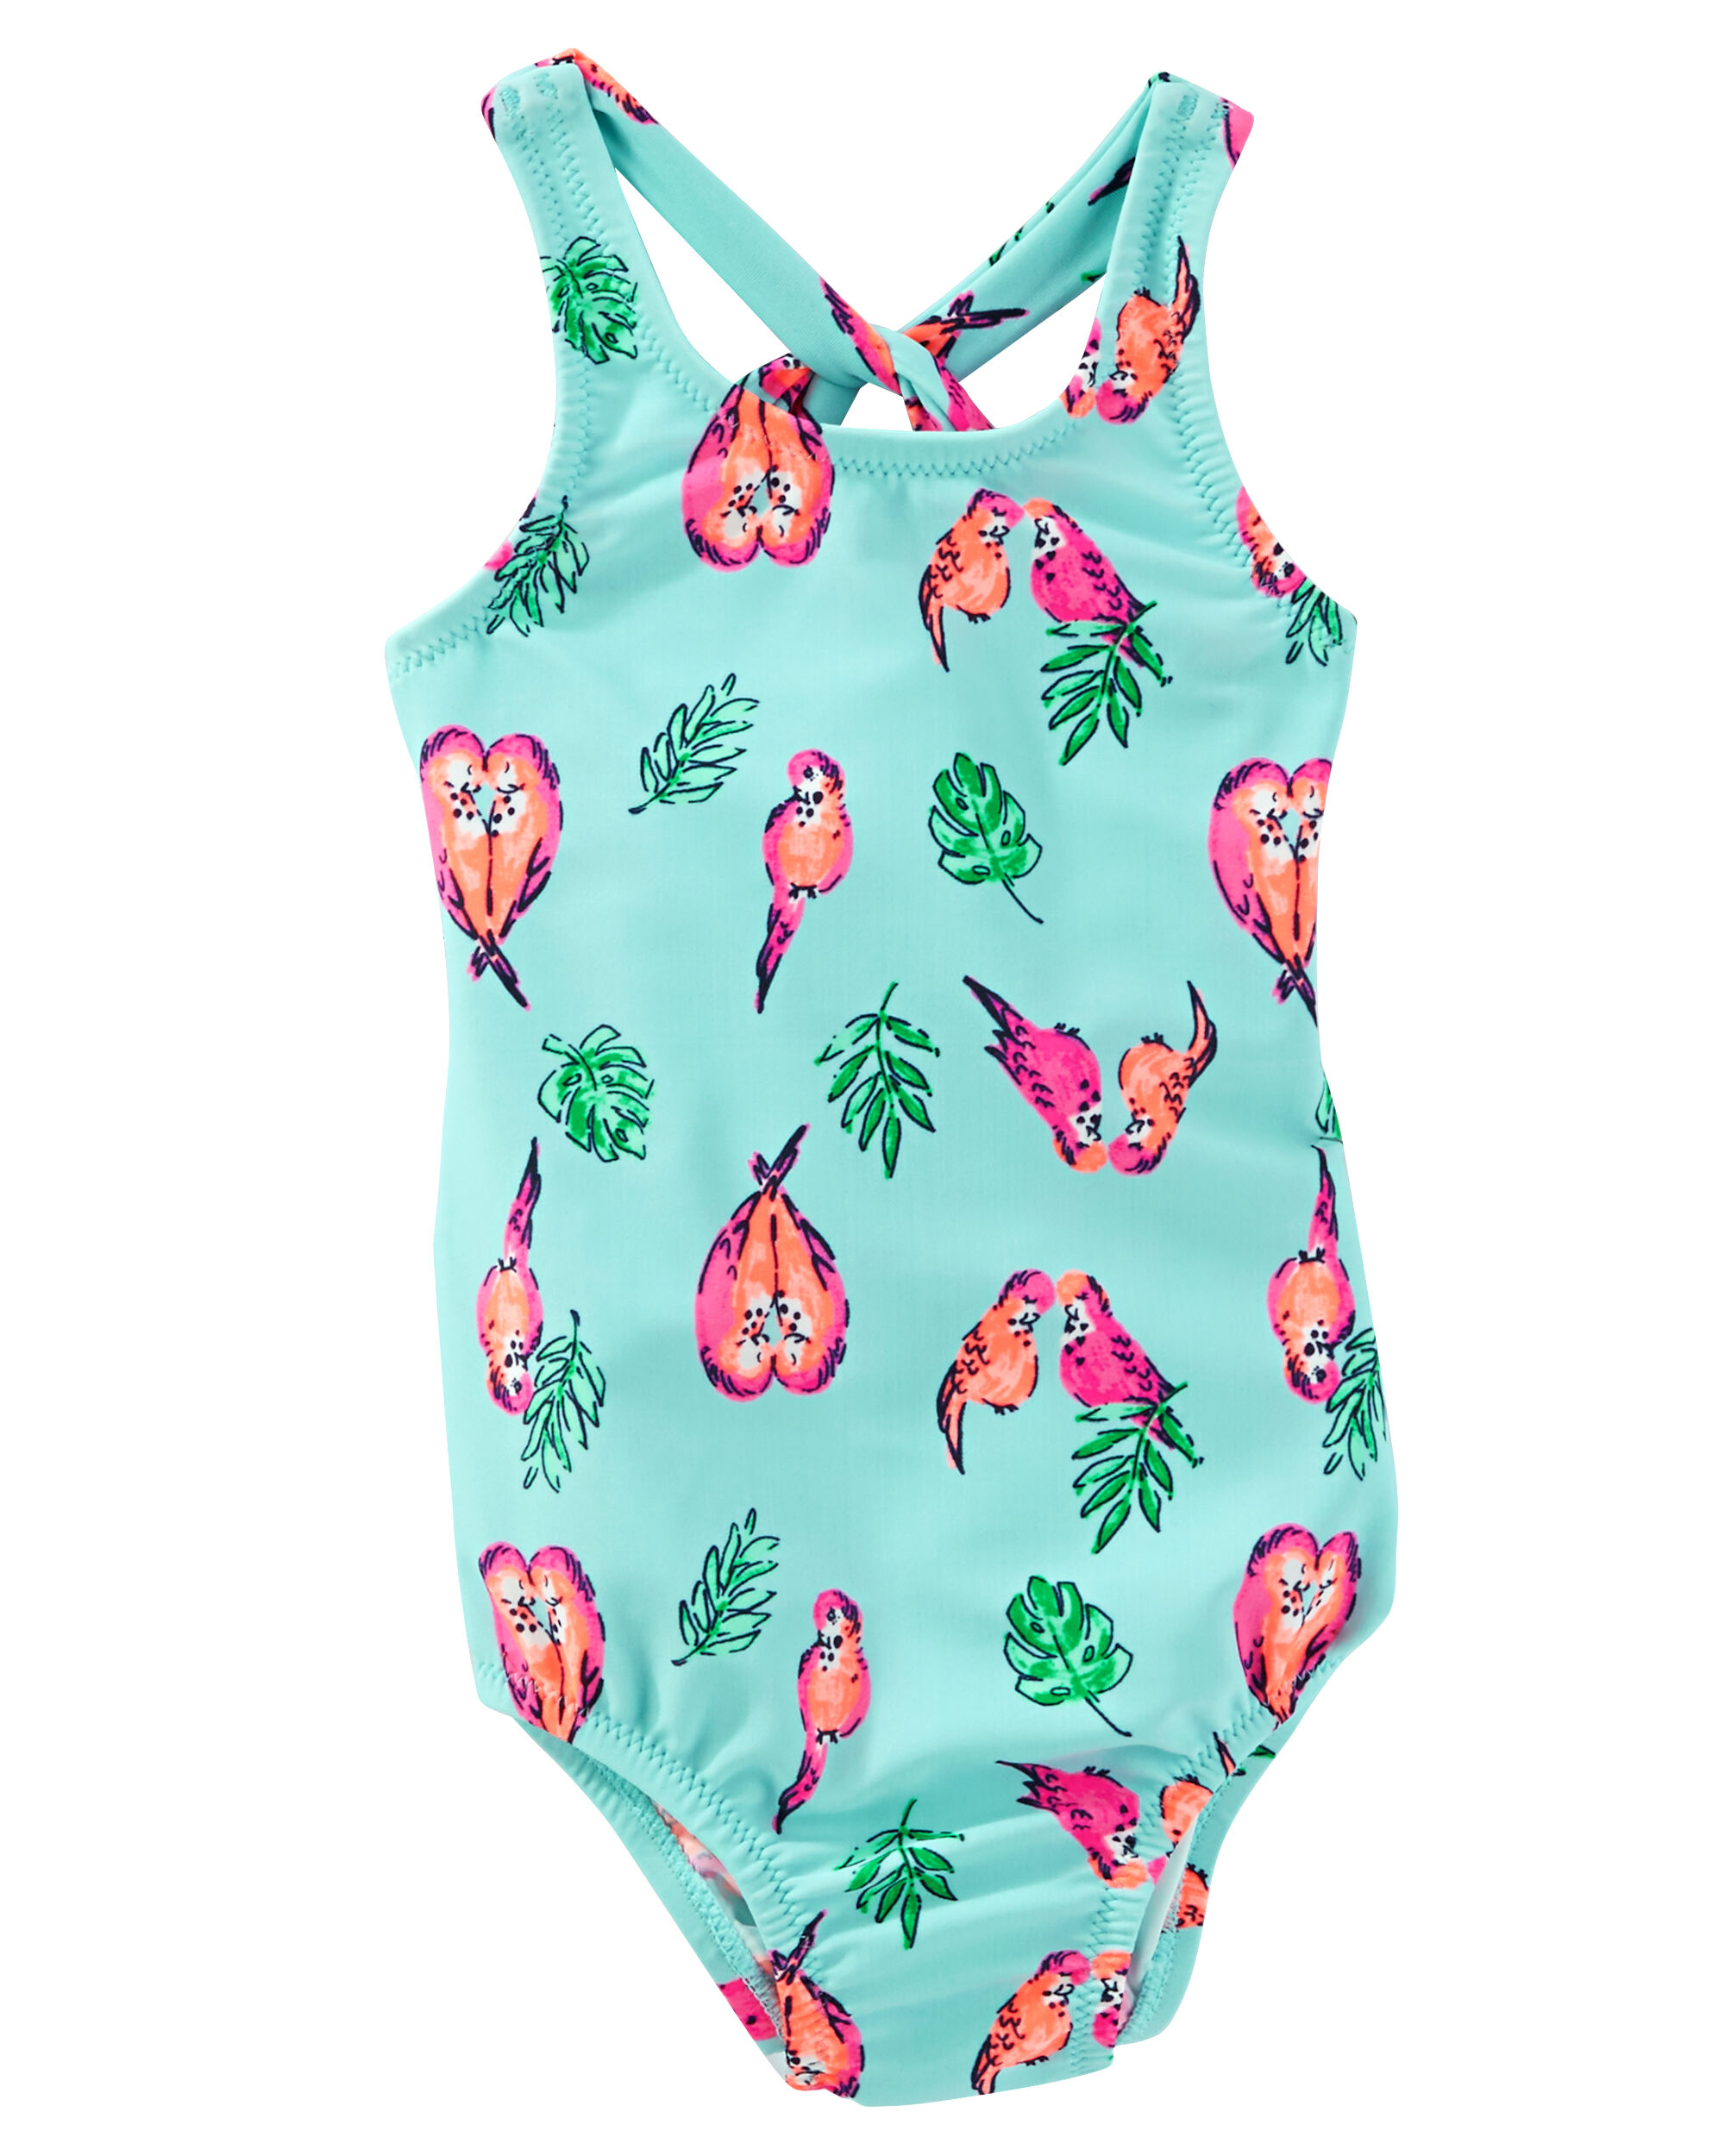 OshKosh Parrot Print Swimsuit | OshKosh.com